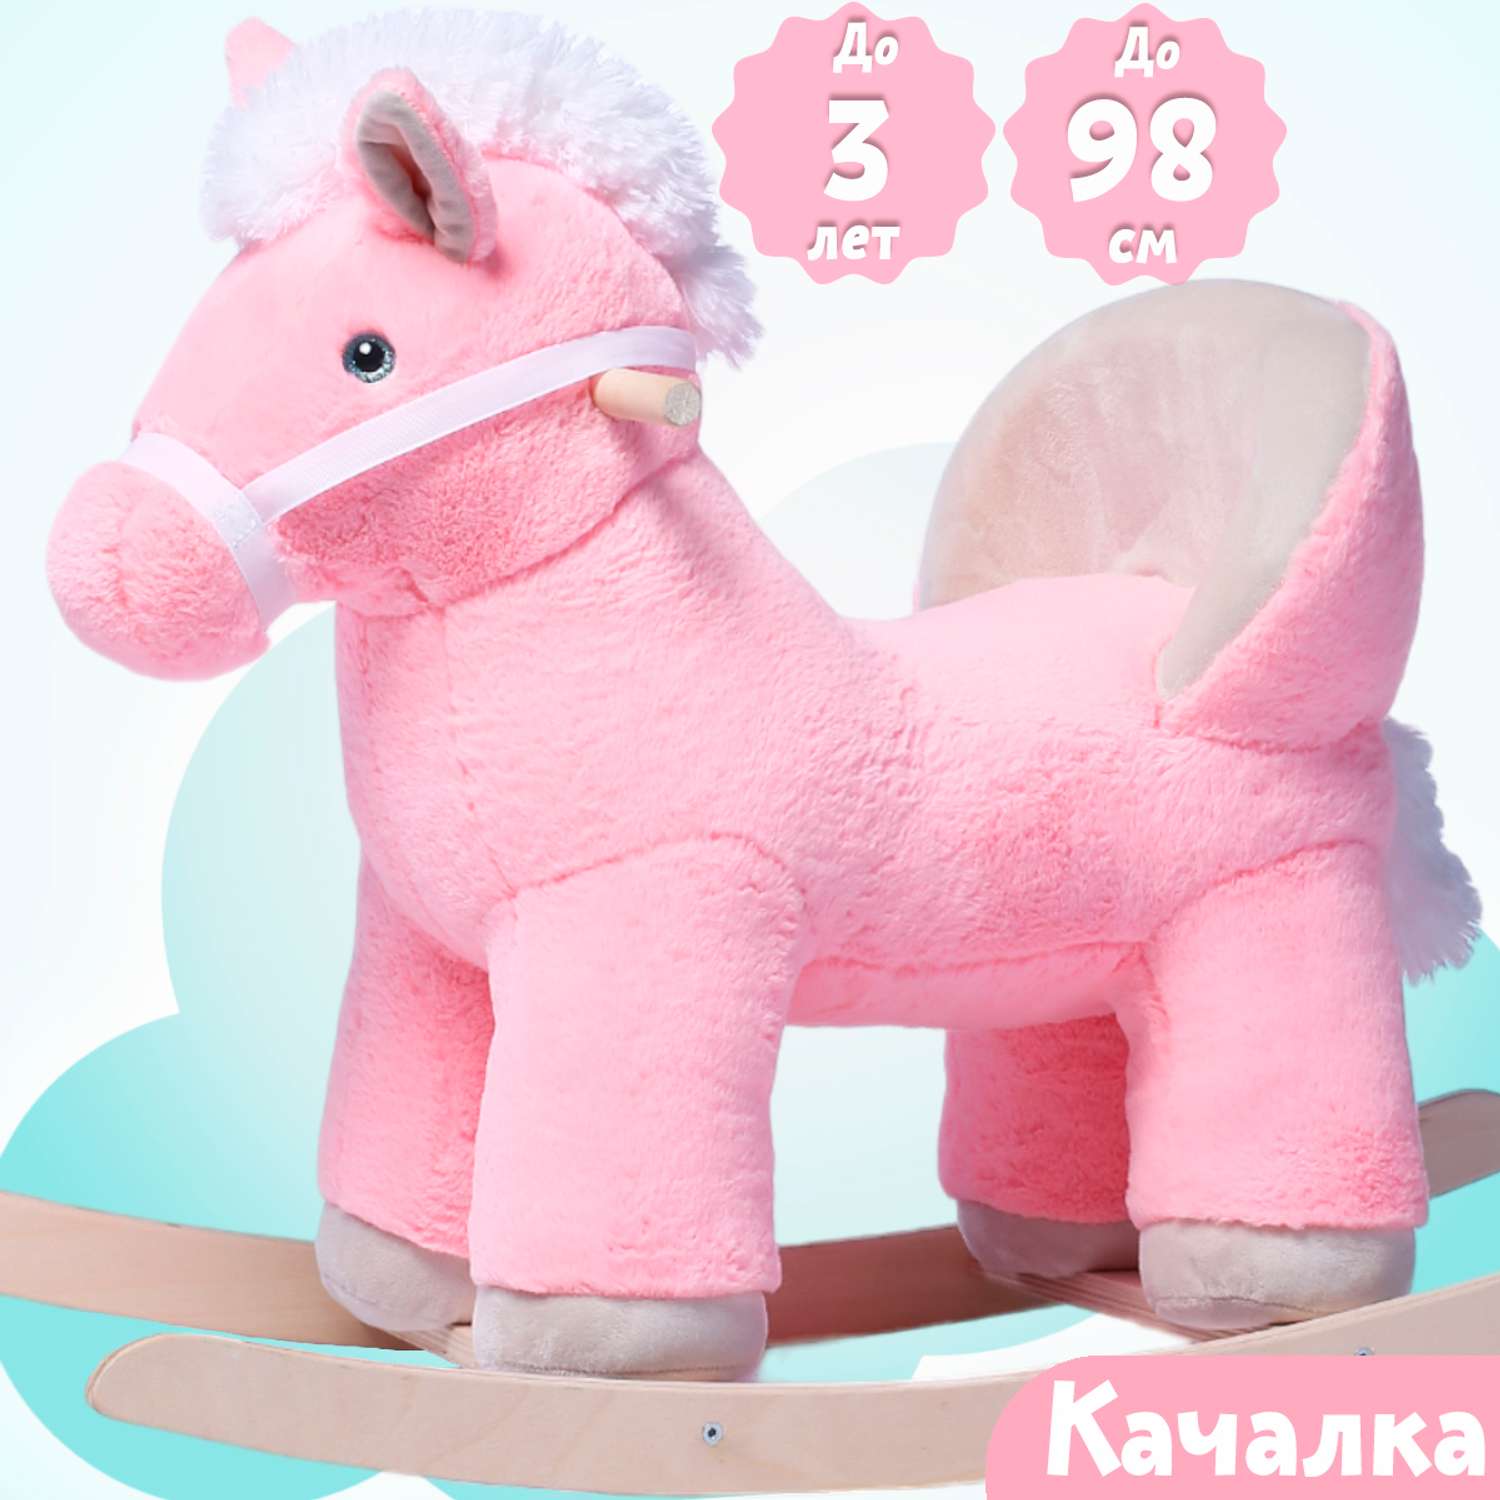 Качалка Нижегородская игрушка Лошадь розовая - фото 4